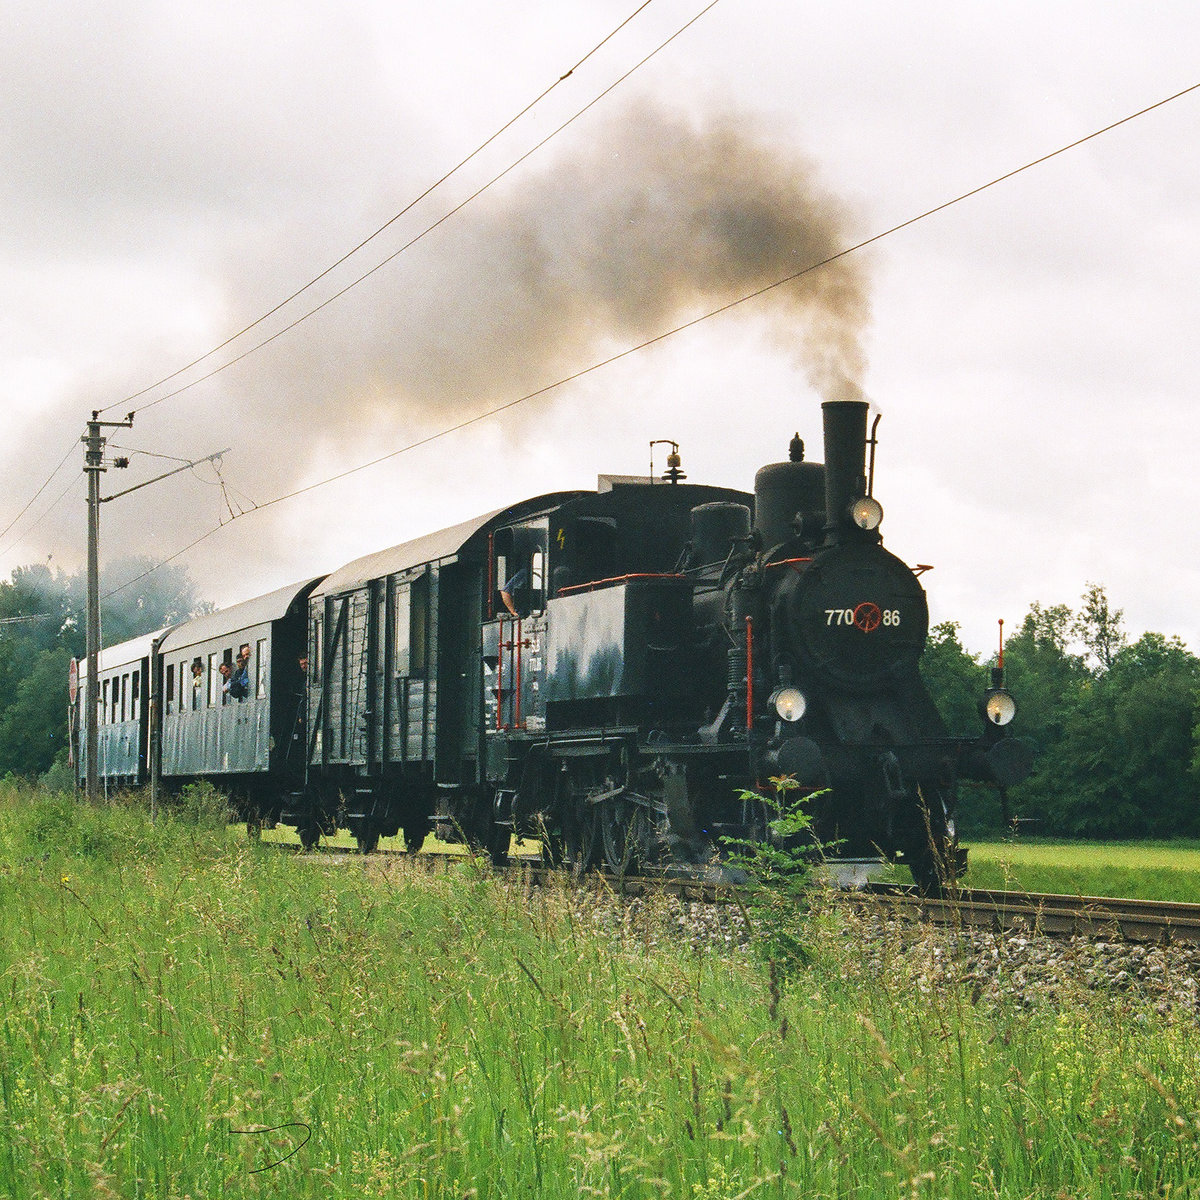 06.06.2004, Aus Anlass des 30. Geburtstages der Östereichischen Gesellschaft für Eisenbahngeschichte (ÖGEG) fanden auf der Strecke der Salzburger Lokalbahn  	Sonderzugfahrten statt. Fotografiert habe ich die 770.86 mit ihrem Lokalbahnzug bei Anthering.  